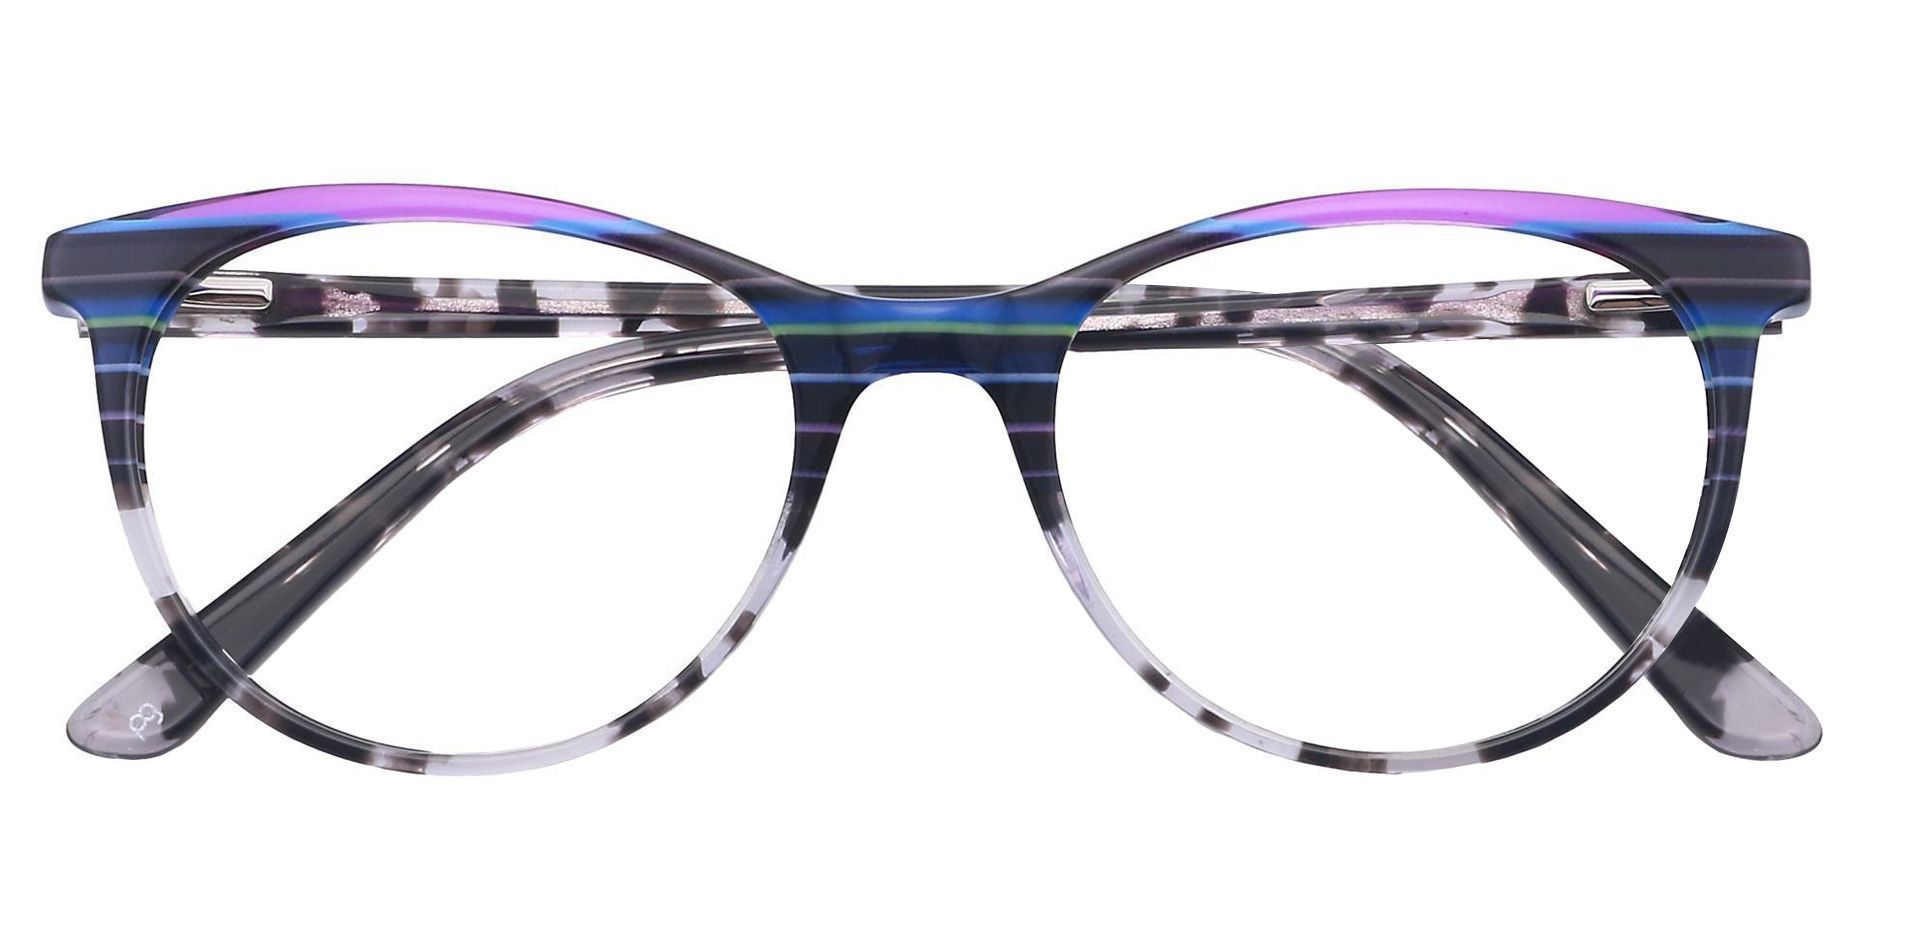 Patagonia Oval Prescription Glasses - Multicolored Blue Stripes  Multicolor